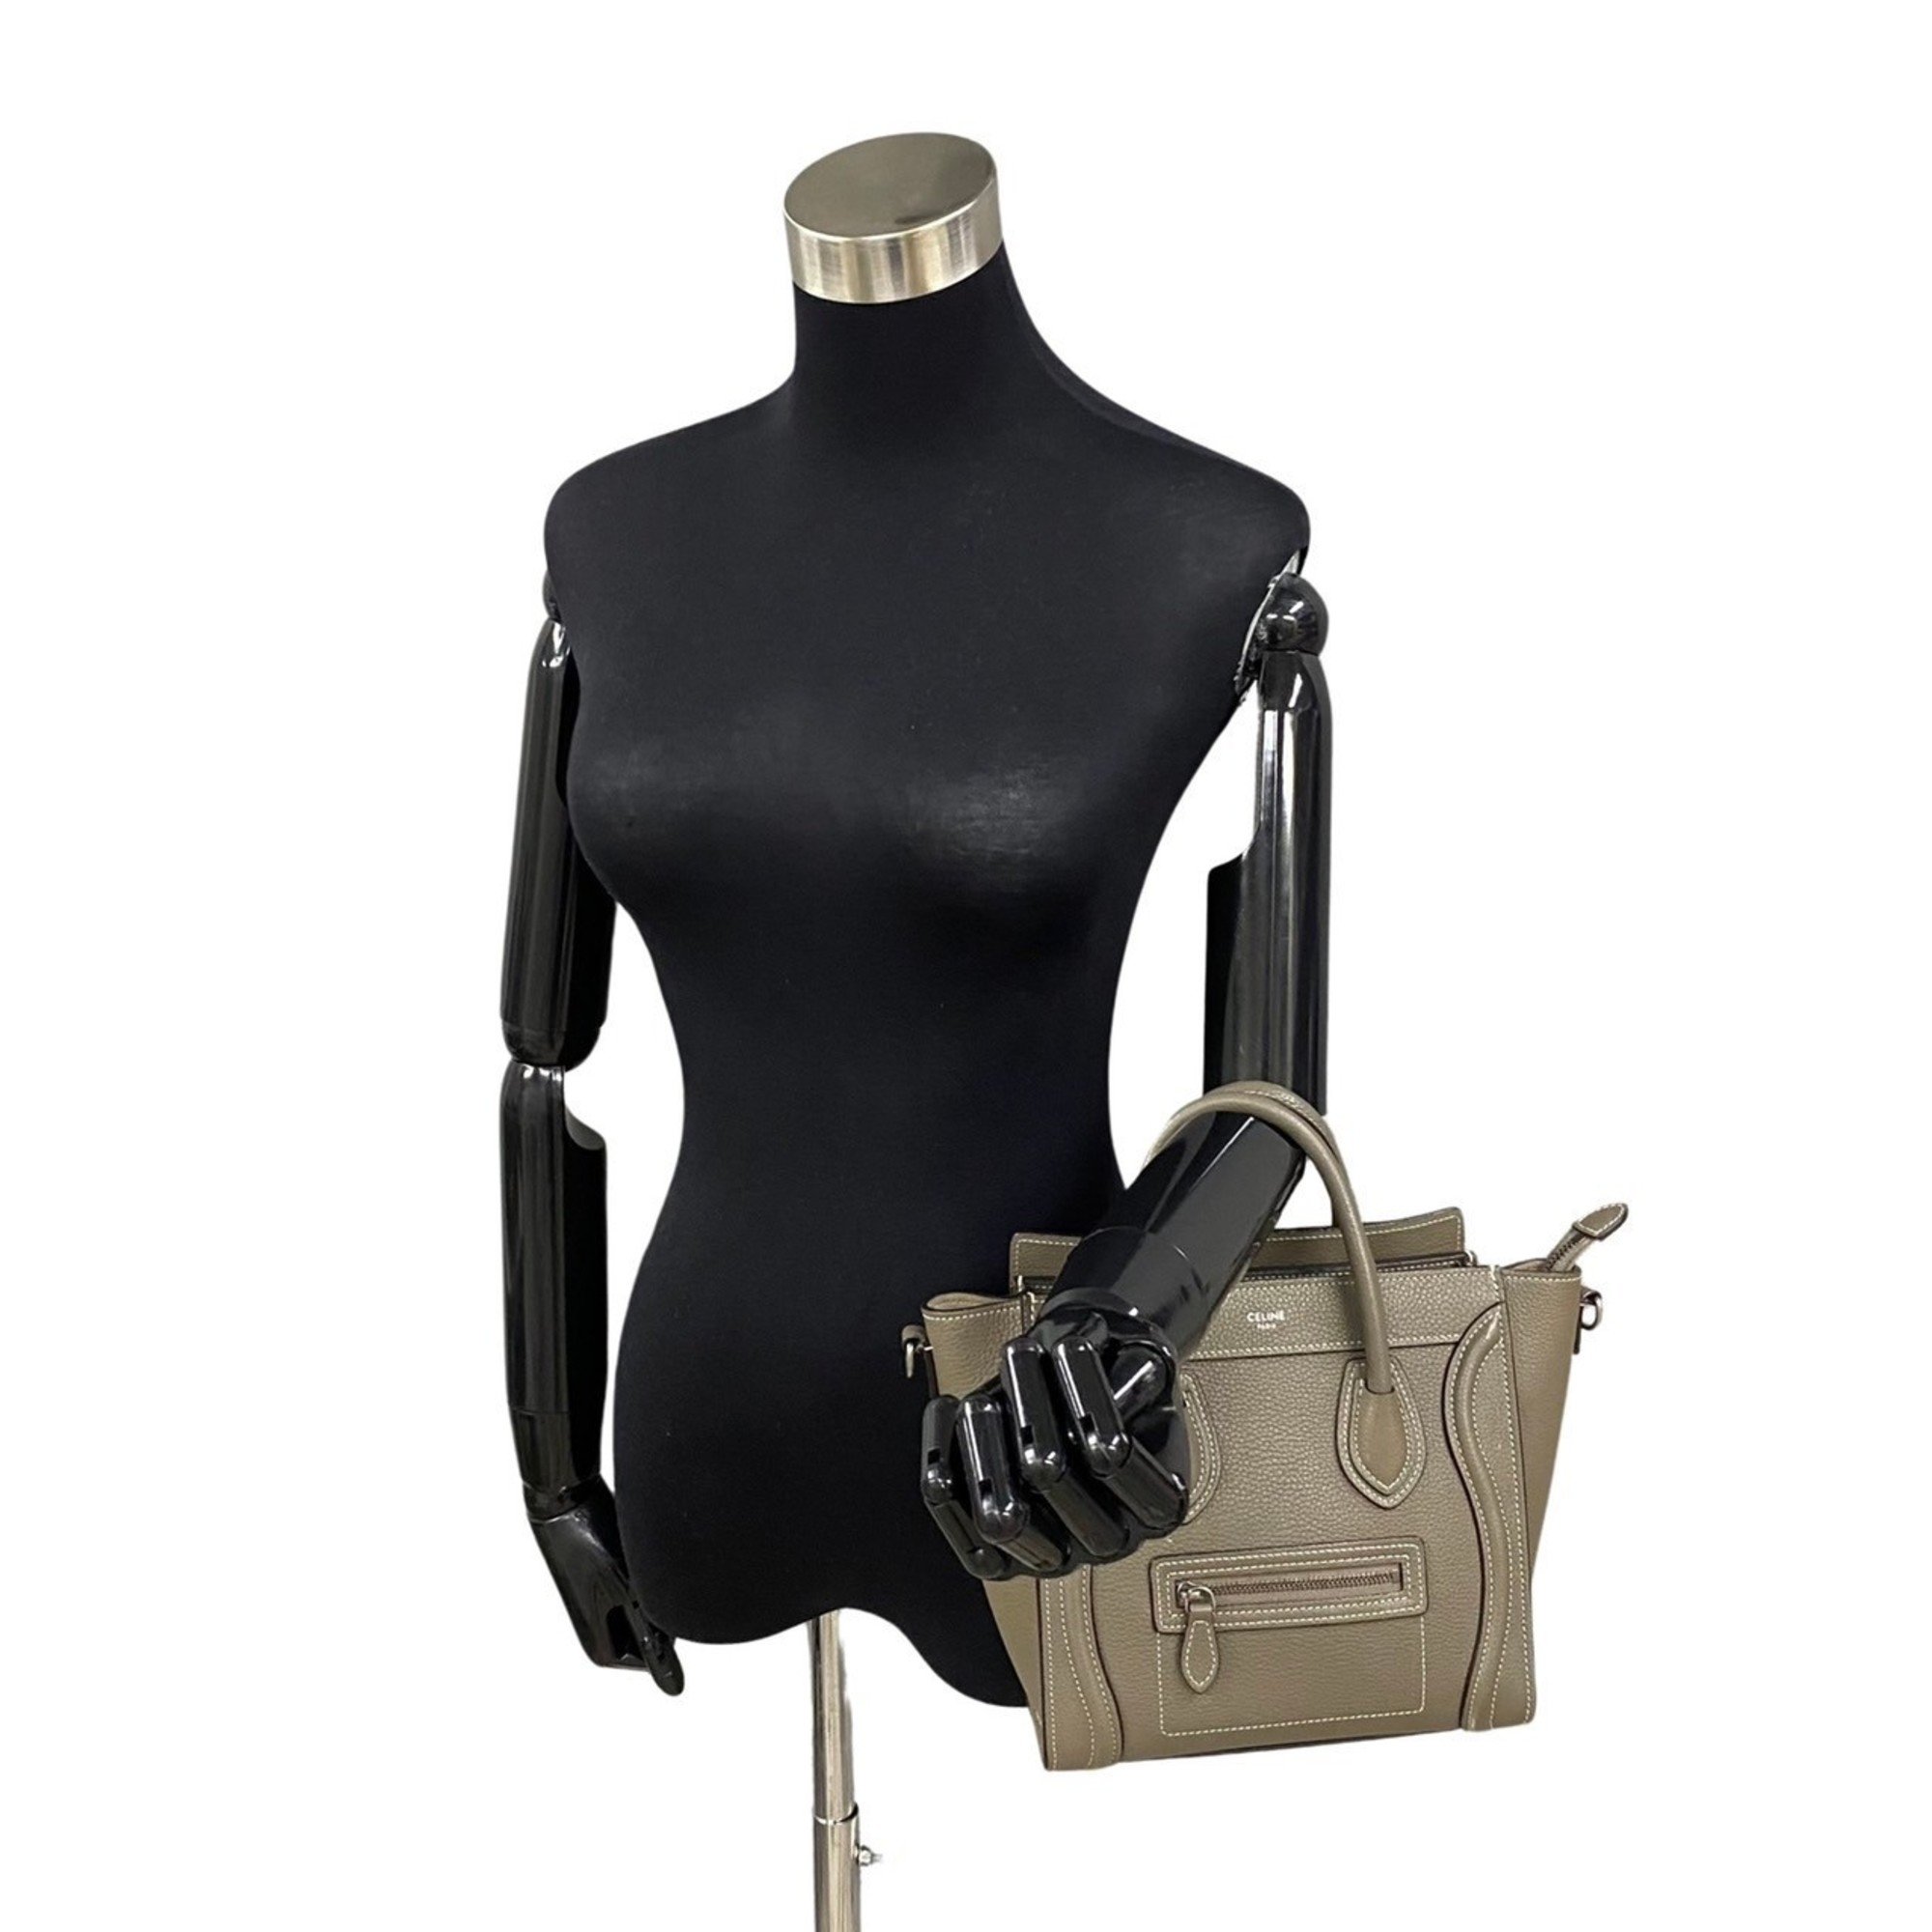 CELINE Luggage Nano Shopper Leather 2way Handbag Tote Bag Shoulder Greige 15963